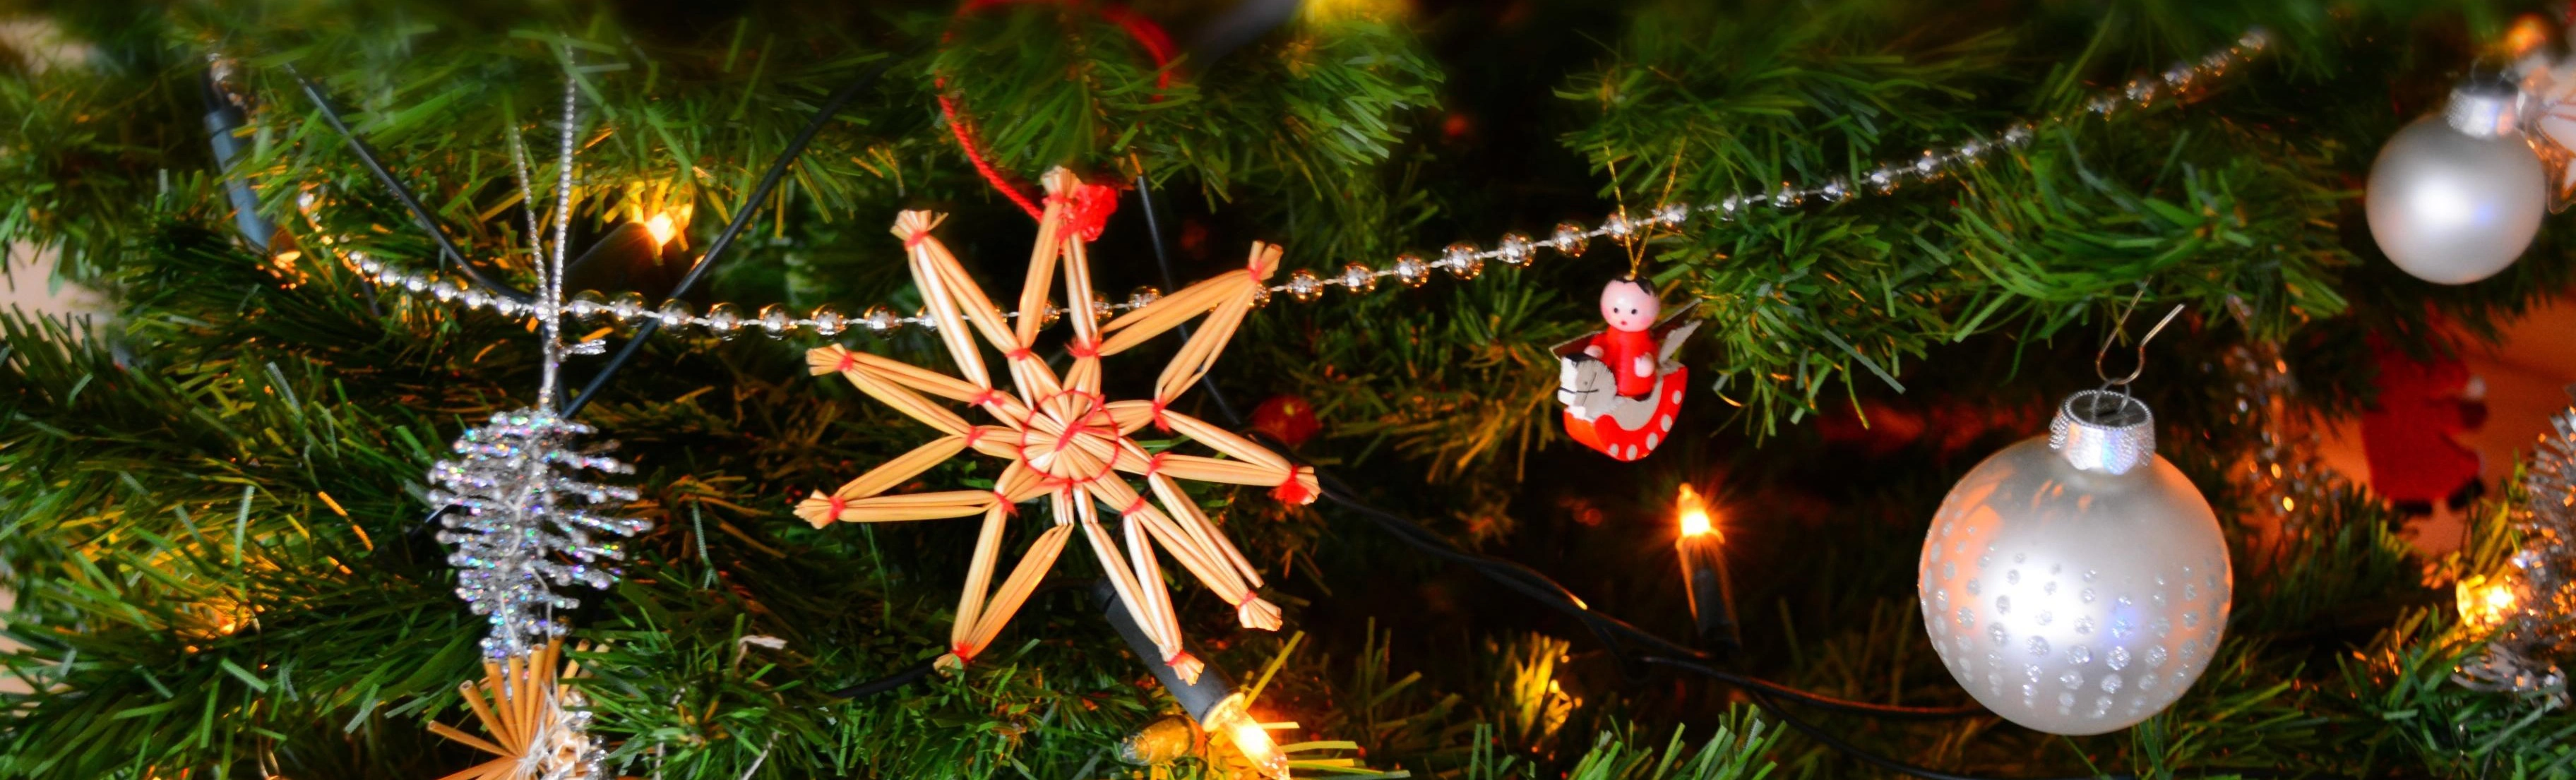 Дед Мороз и Снегурочка появятся на красочном новогоднем шоу в Новосибирске